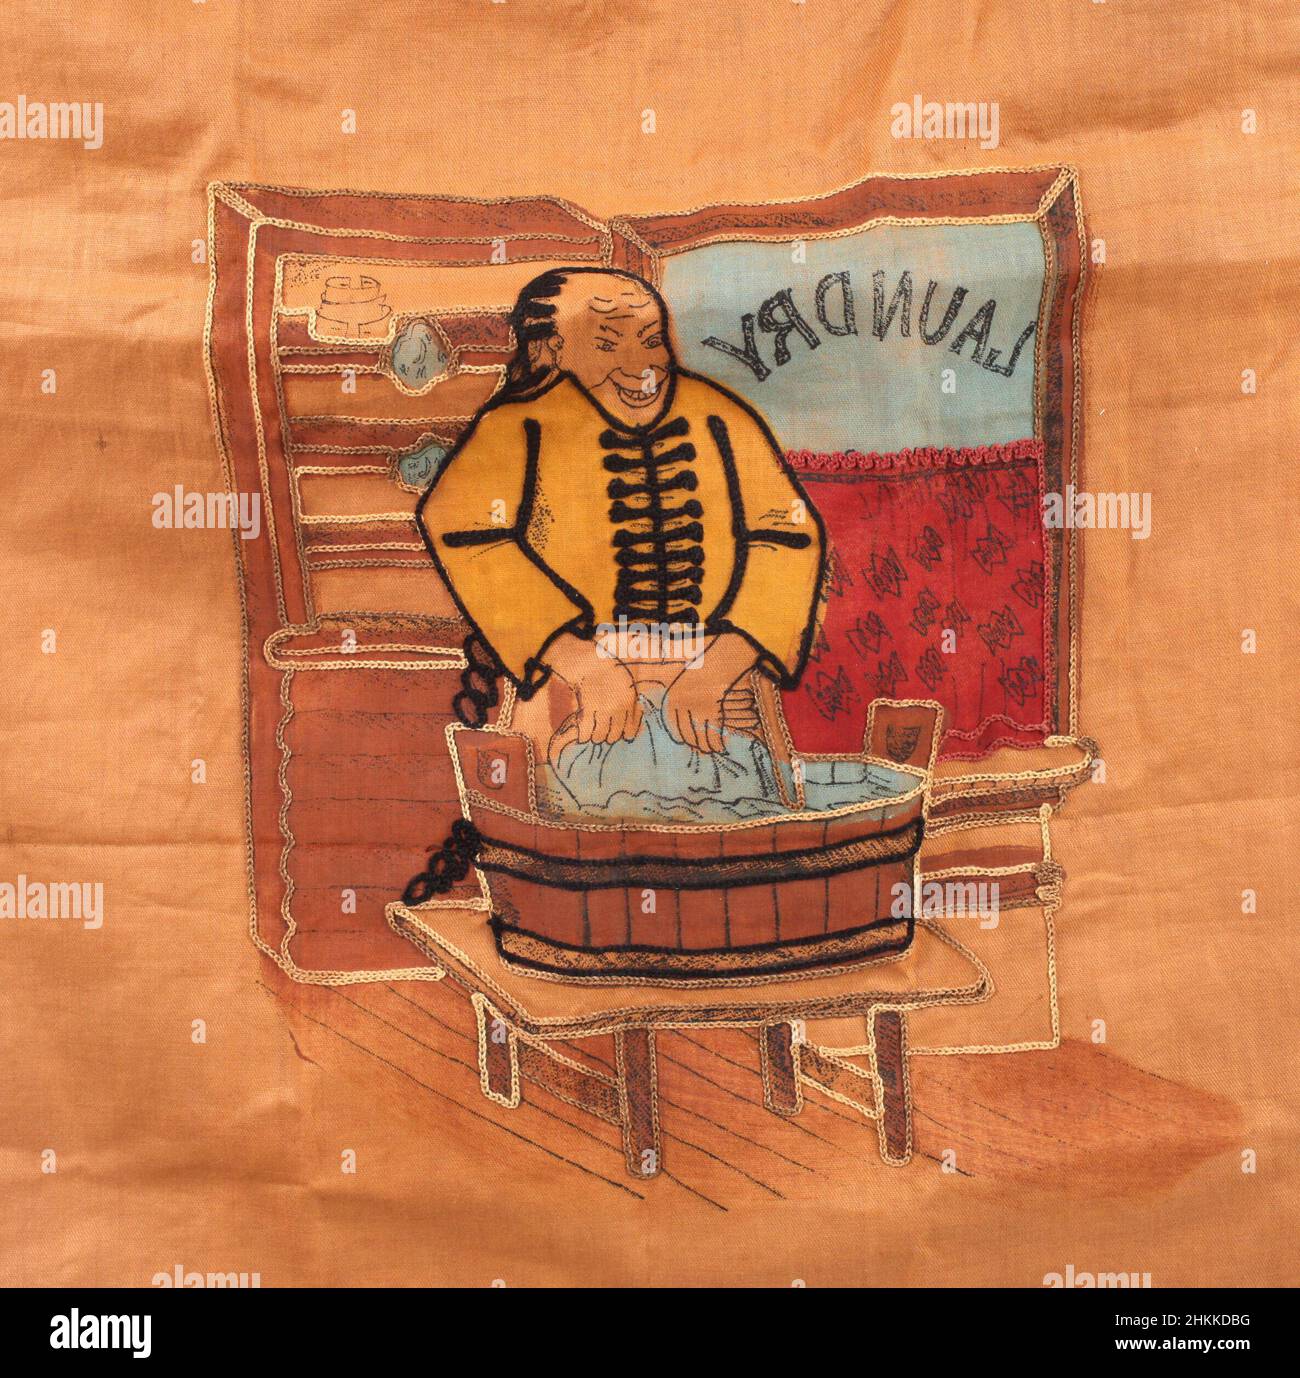 Rassistisches Bild auf einer alten Wäschetasche eines chinesischen Ethnikers, der in einer Wäscherei arbeitet. 1940er. Stockfoto